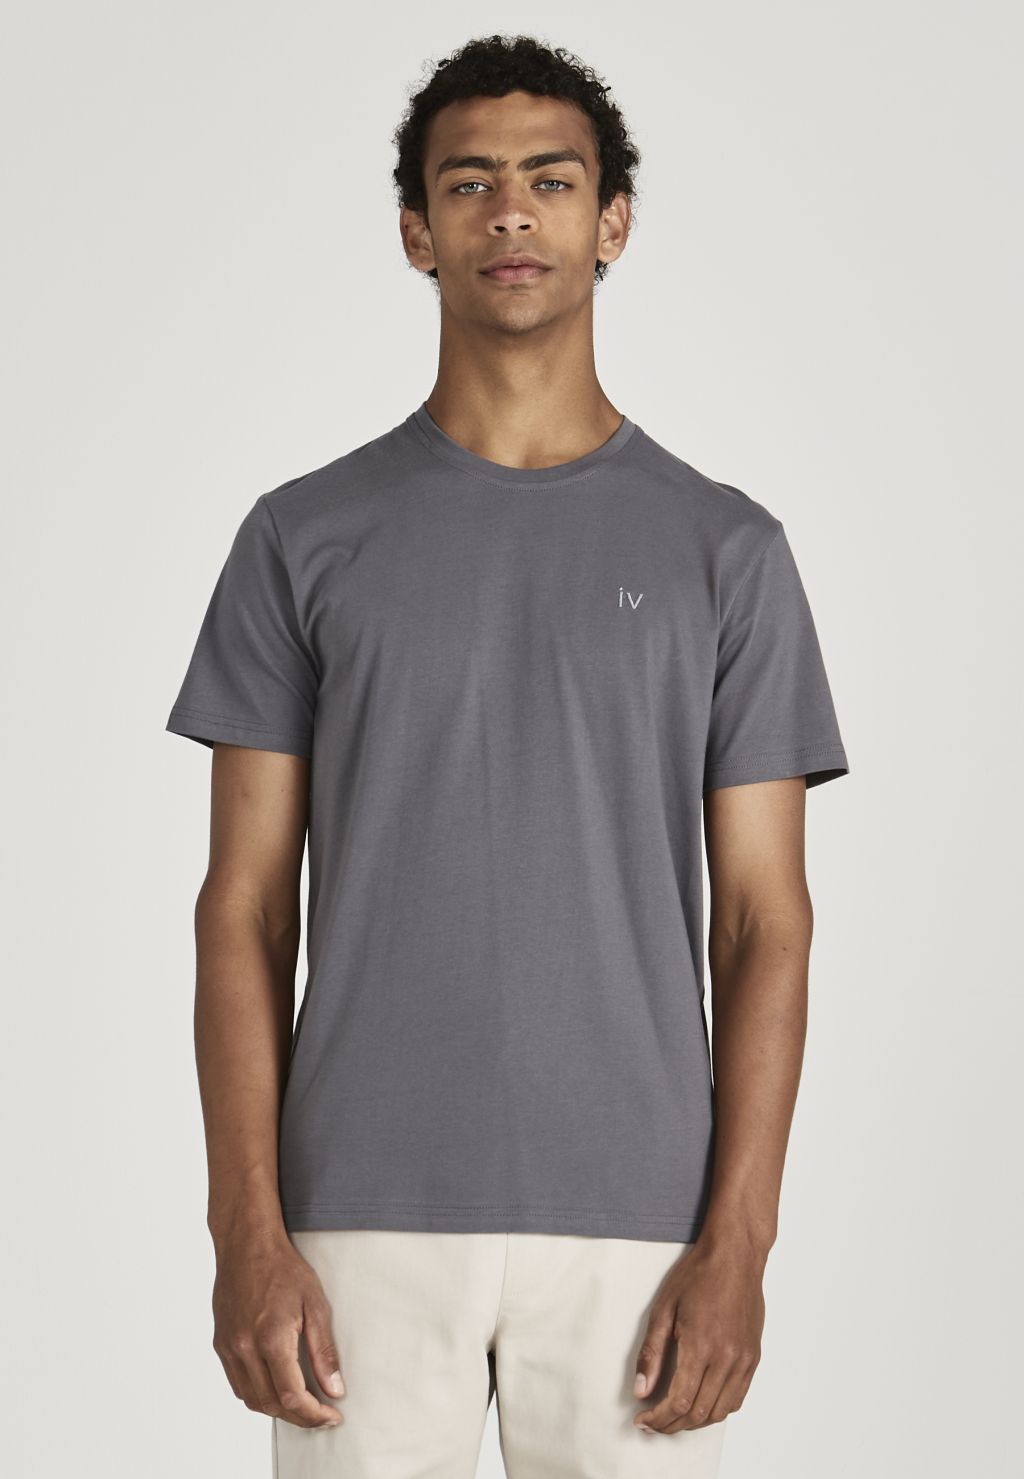 Colby (Iv) - T-Shirt - Bio-Baumwolle - Shadow Grey L